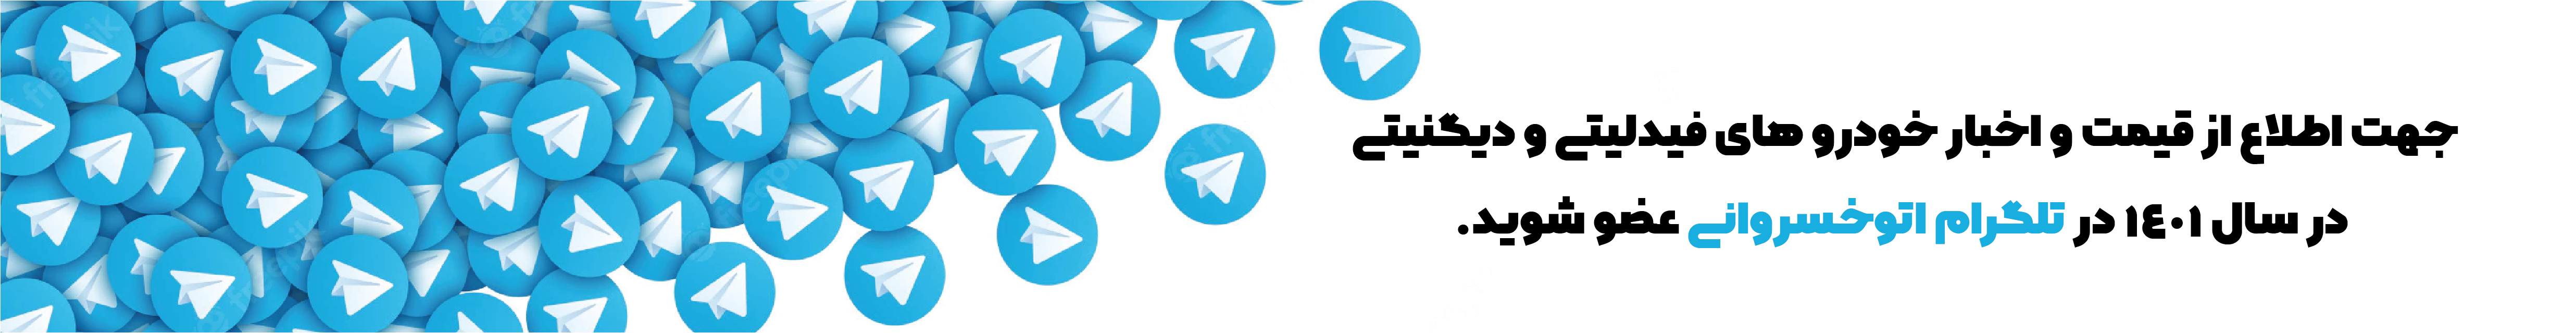 تلگرام اتوخسروانی